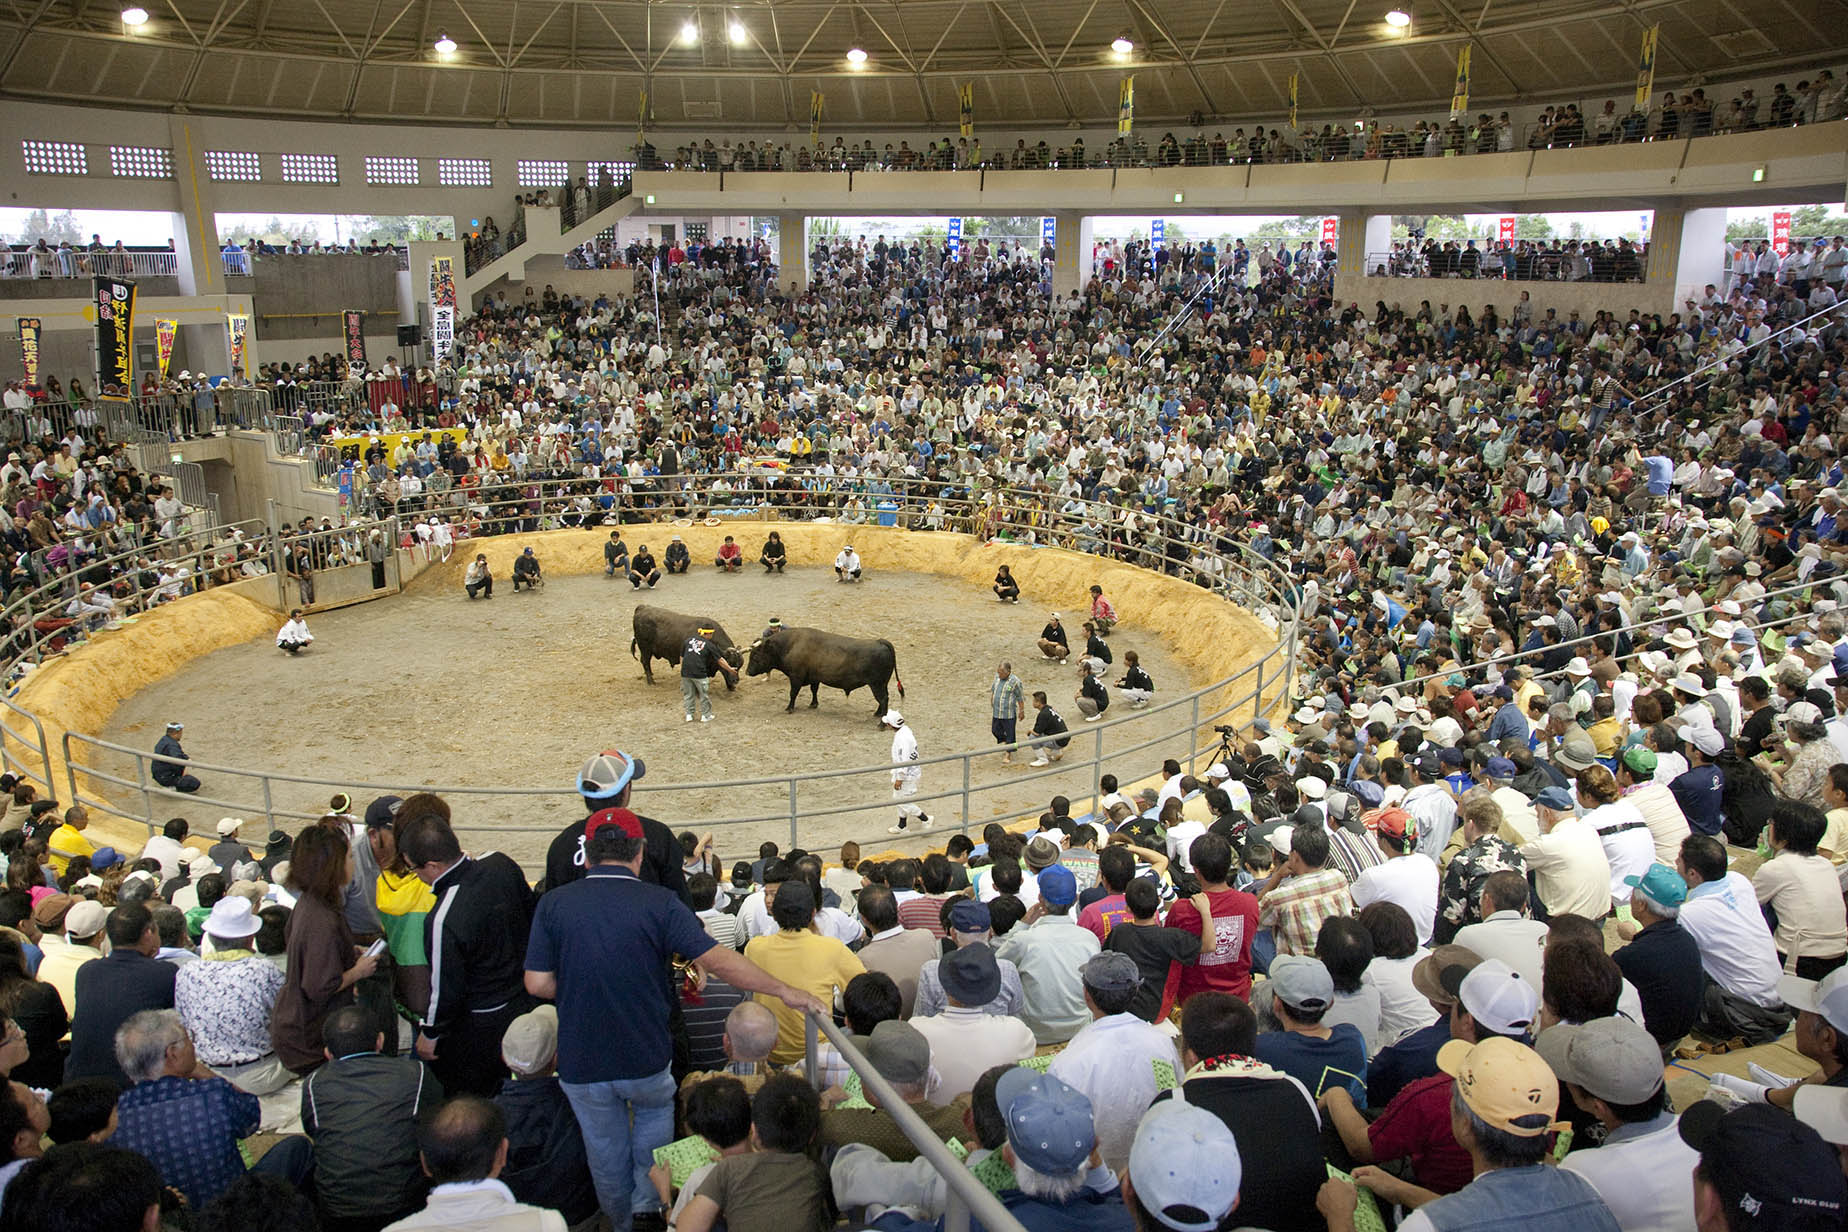 bullfighting match view